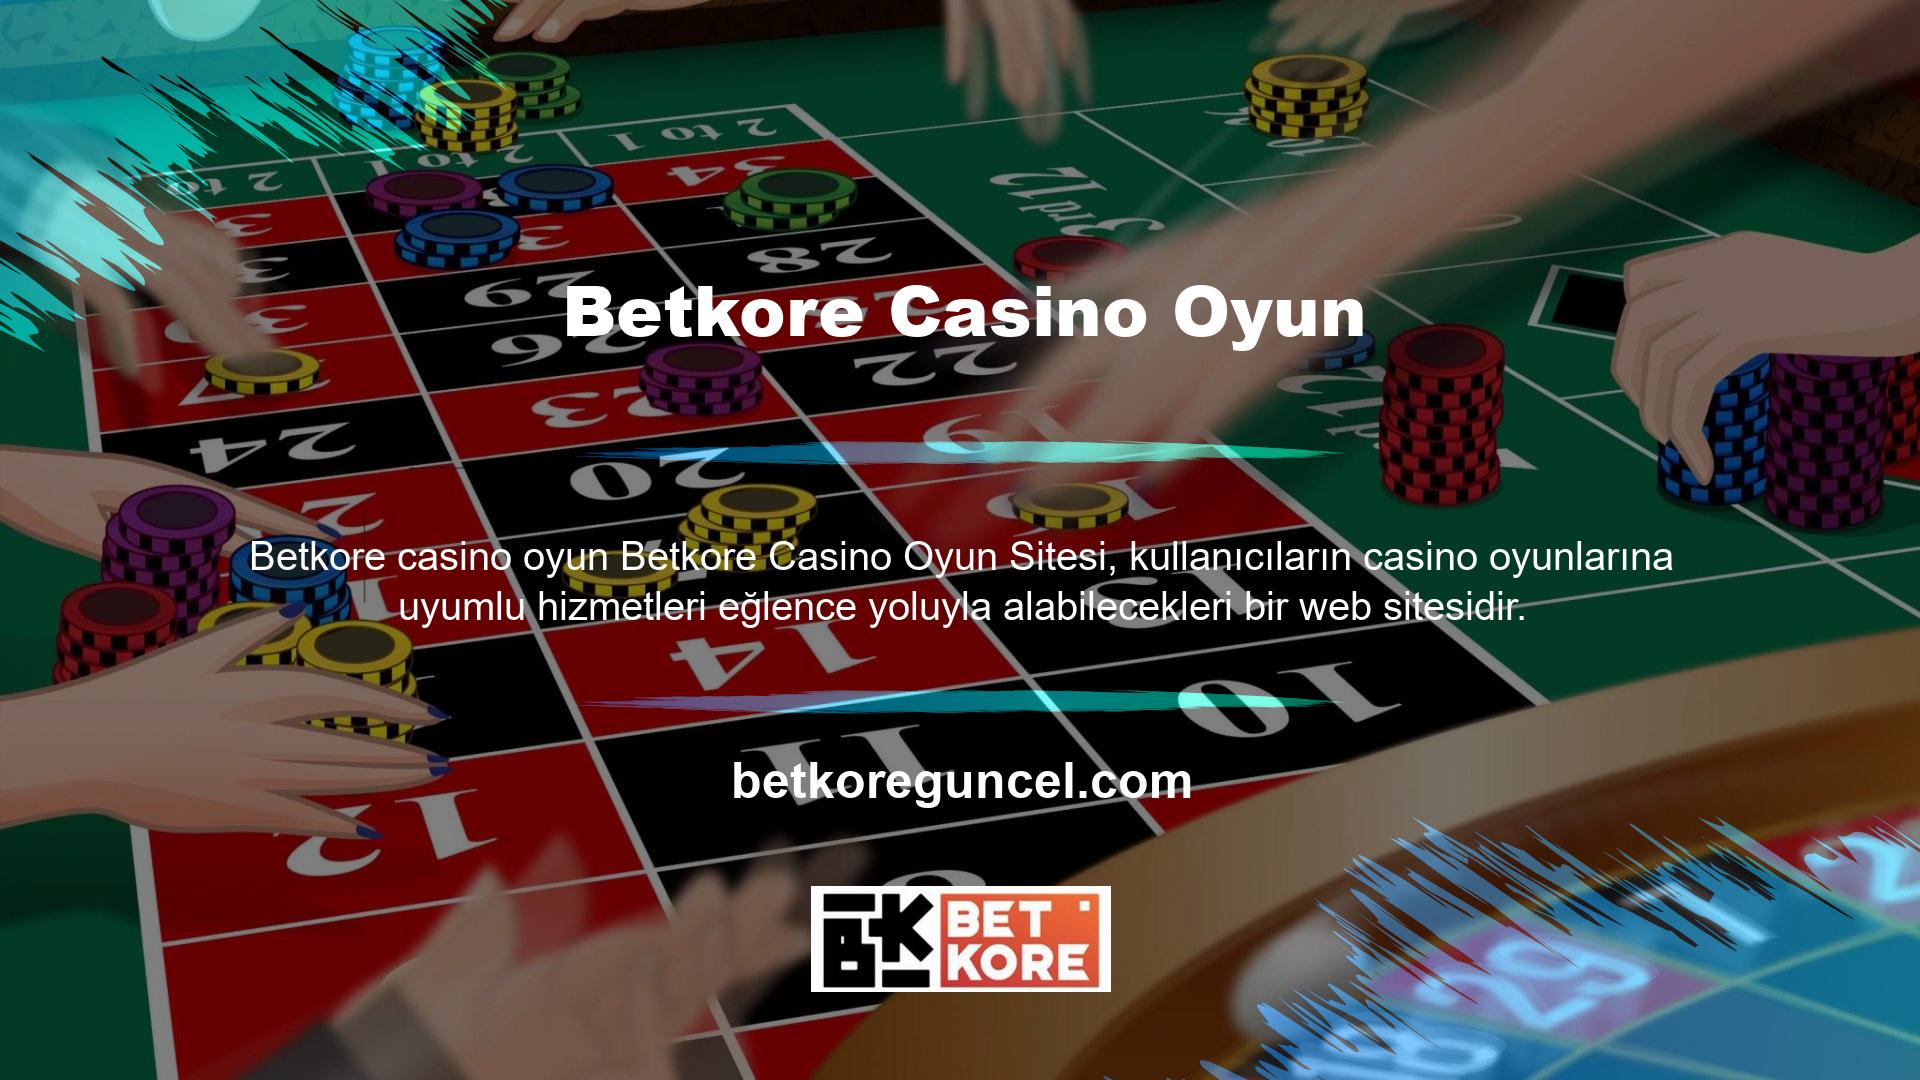 Betkore yüzlerce farklı PC blackjack oyun seçeneği ve casino kategorisi sunmaktadır